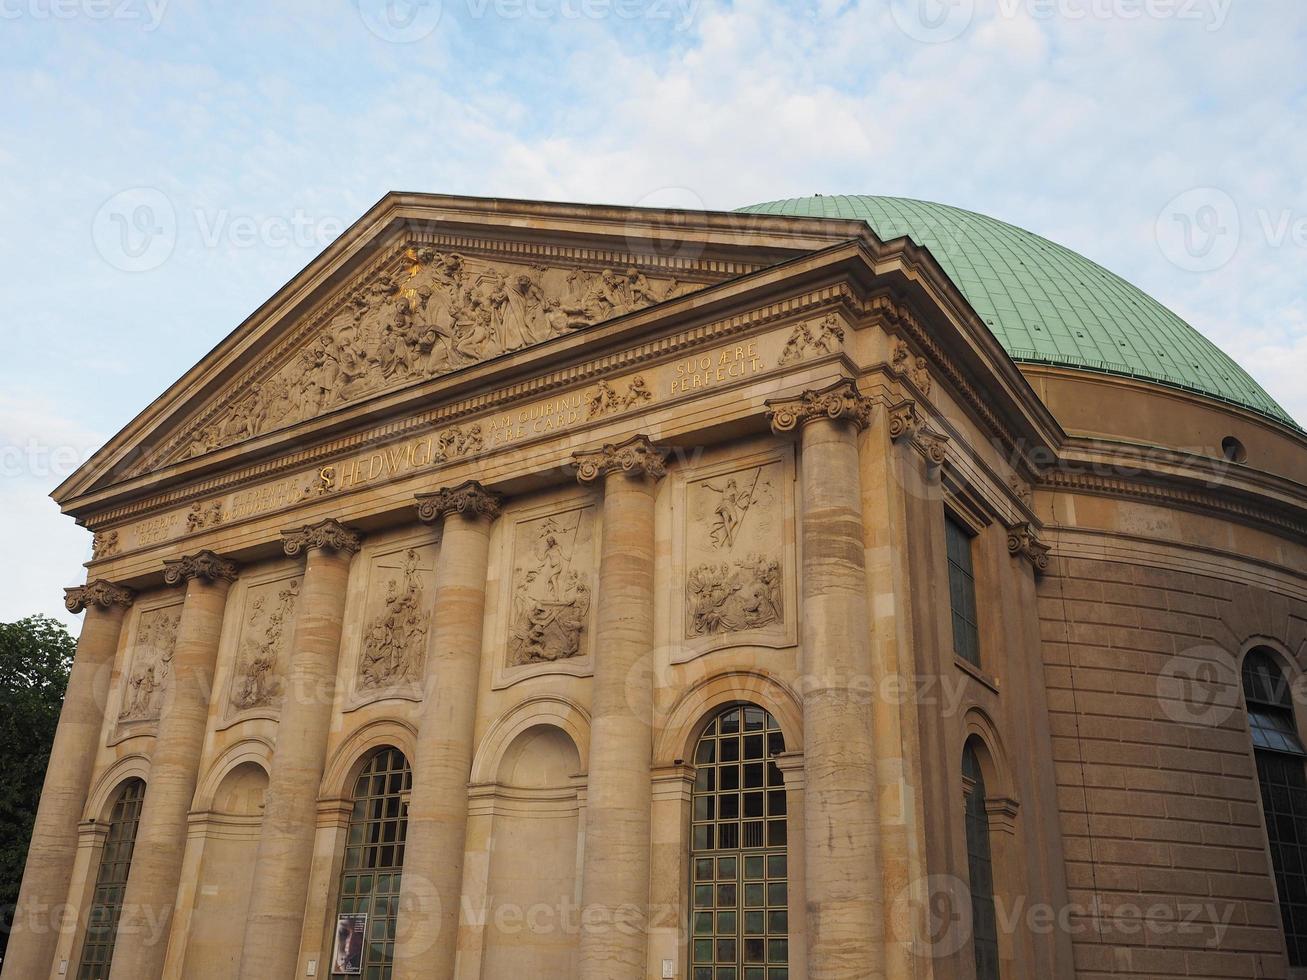 Cattedrale di St Hedwigs a Berlino foto